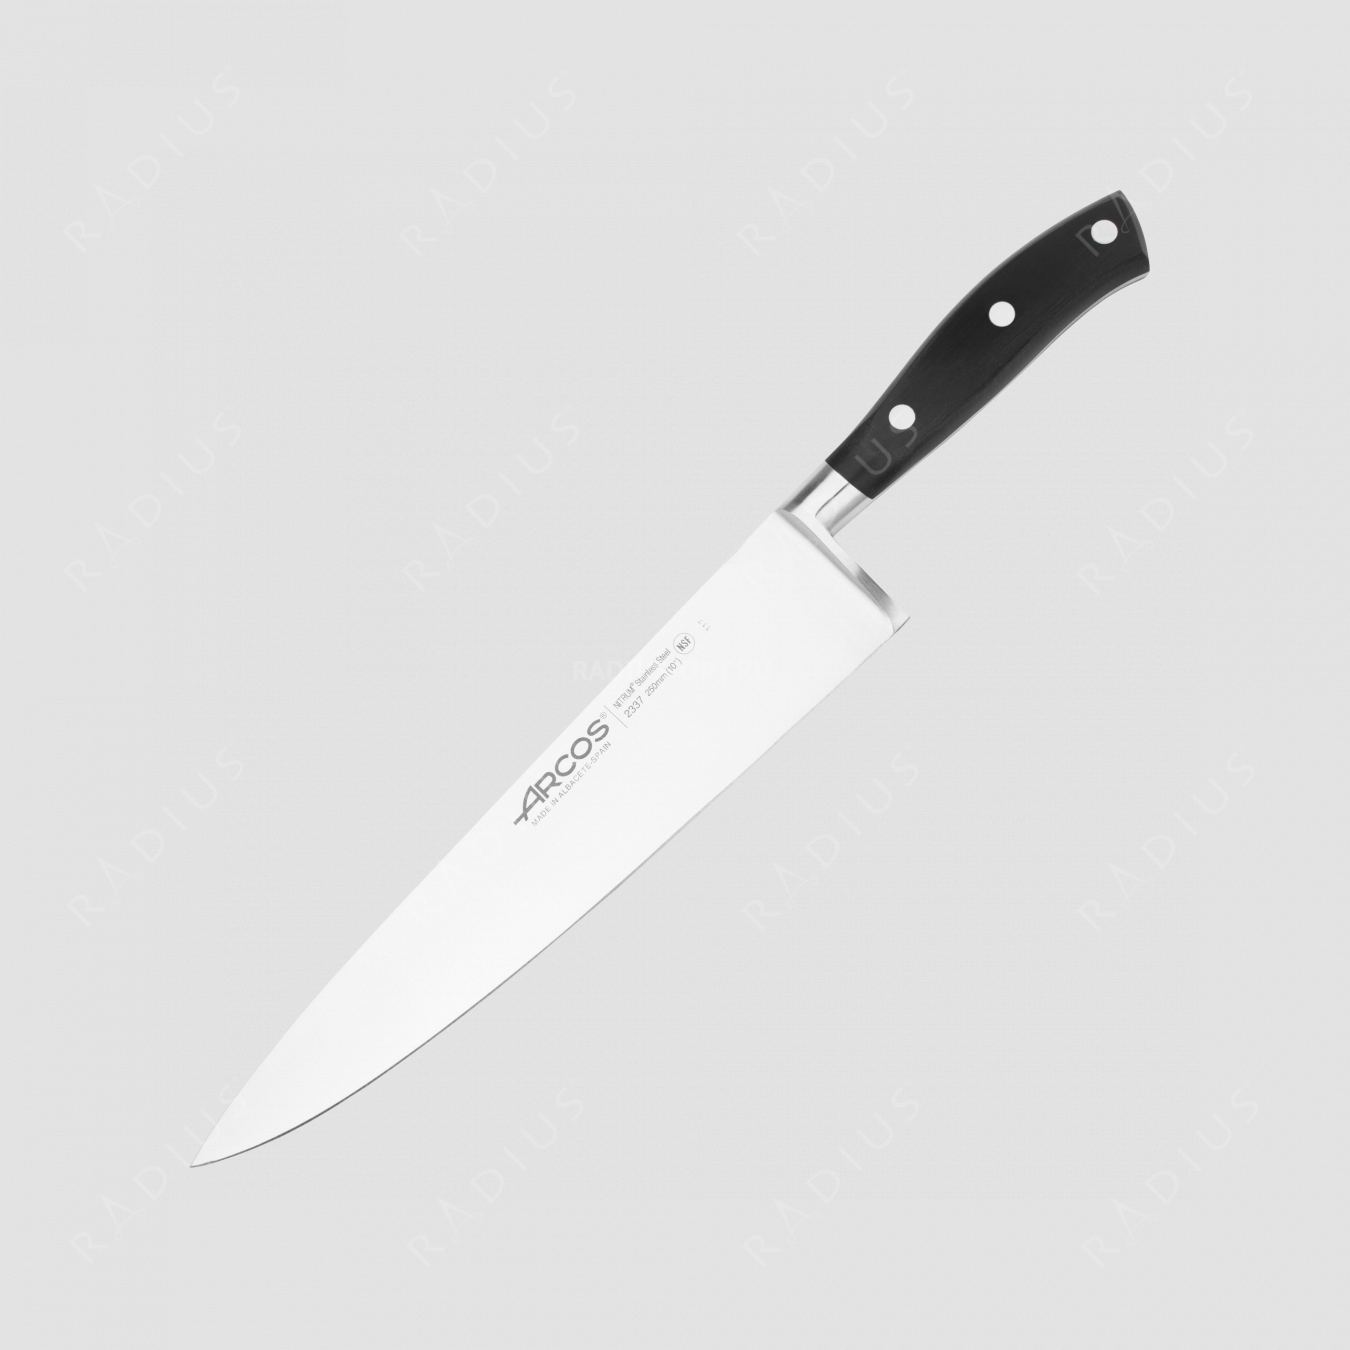 Профессиональный поварской кухонный нож 25 см, серия Riviera, ARCOS, Испания